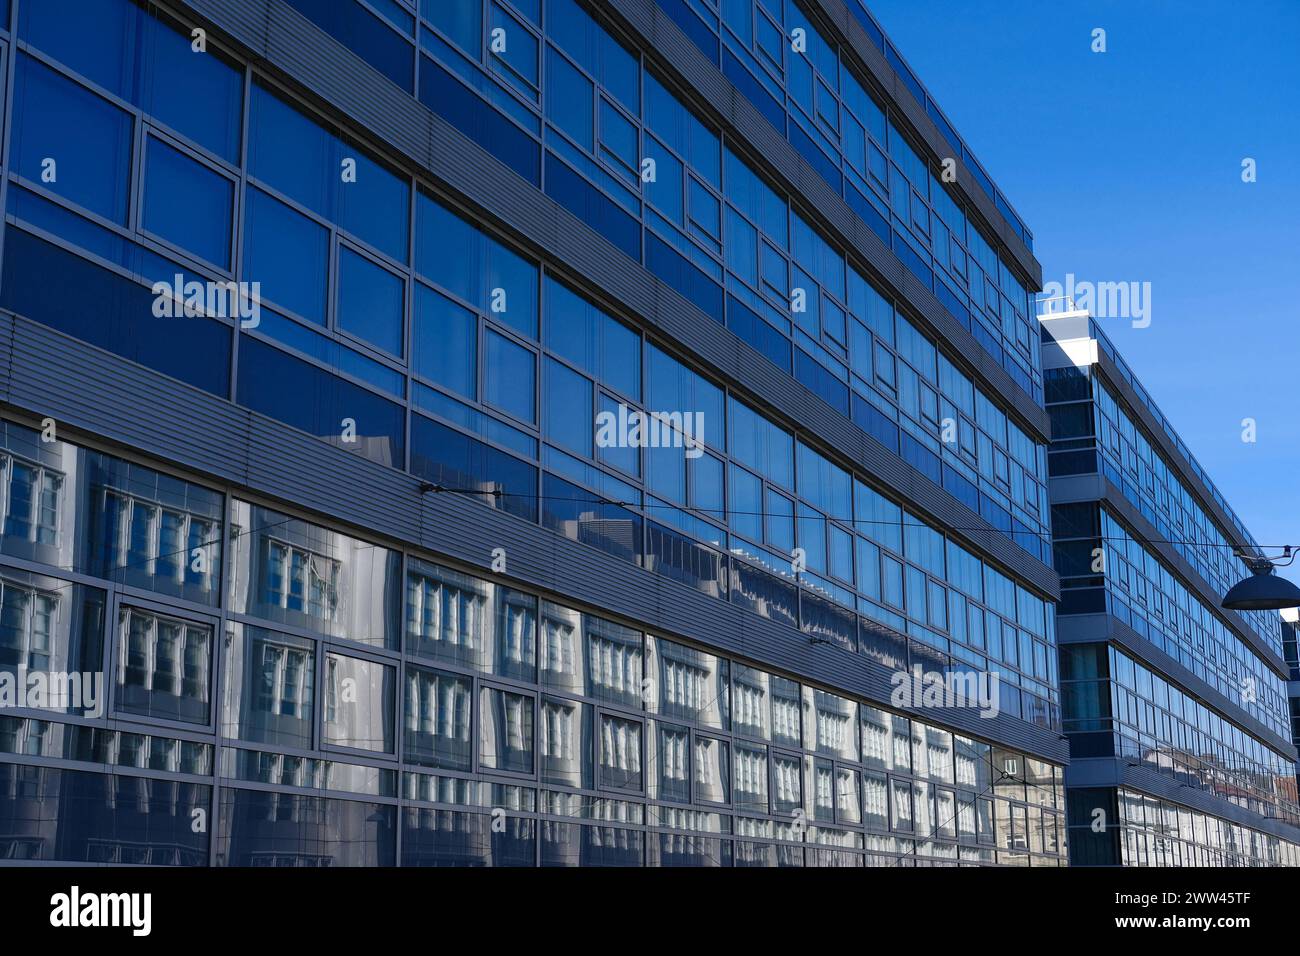 Fassade Europäisches Patentamt München Außenansicht Fensterfront Europäisches Patentamt München. Der gegenüberliegende Gebäudeteil des Europäischen Pa Banque D'Images